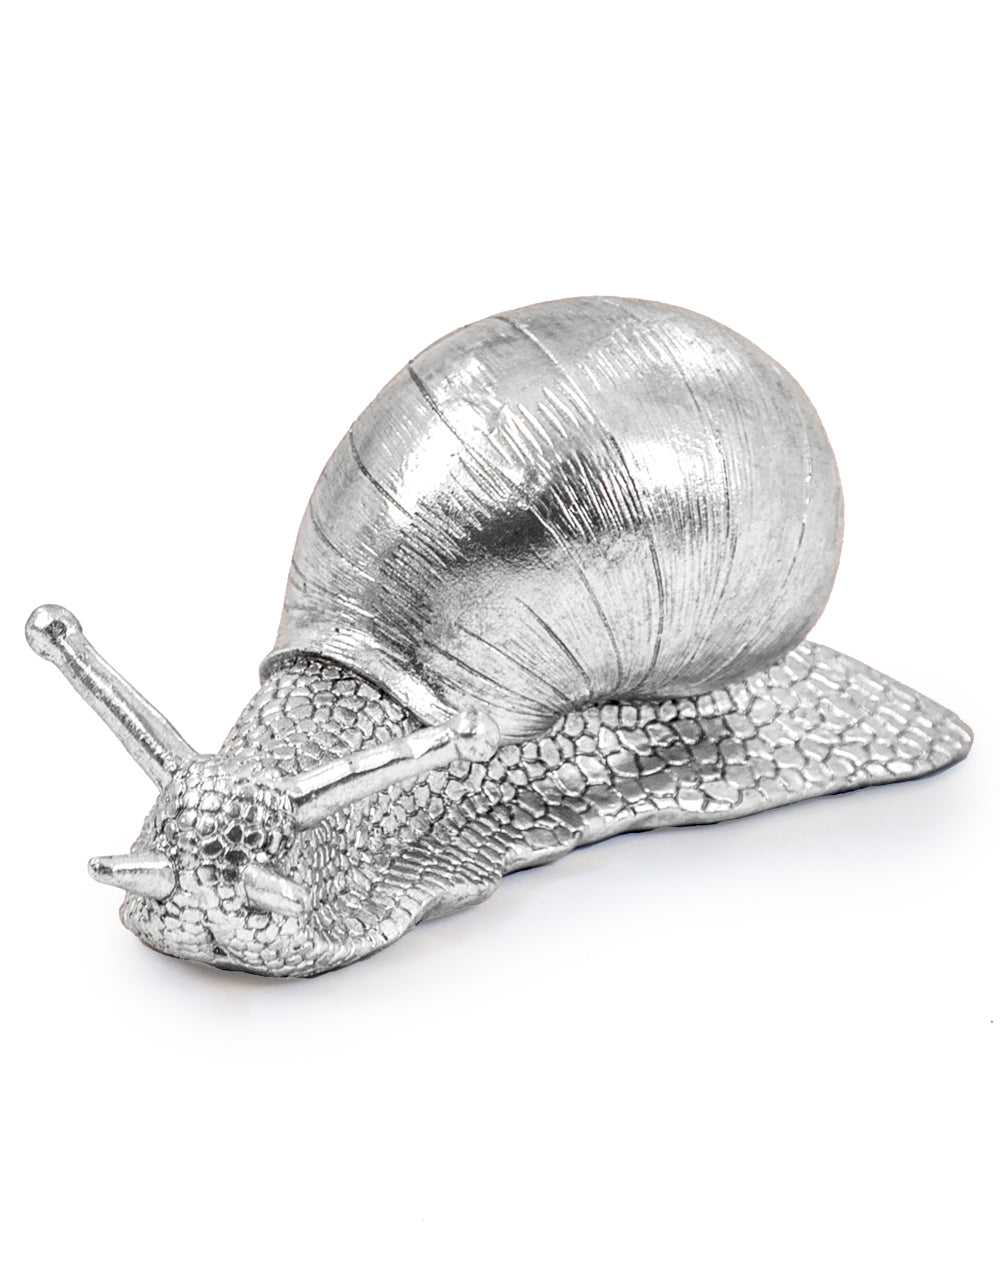 Silver Snail Figure